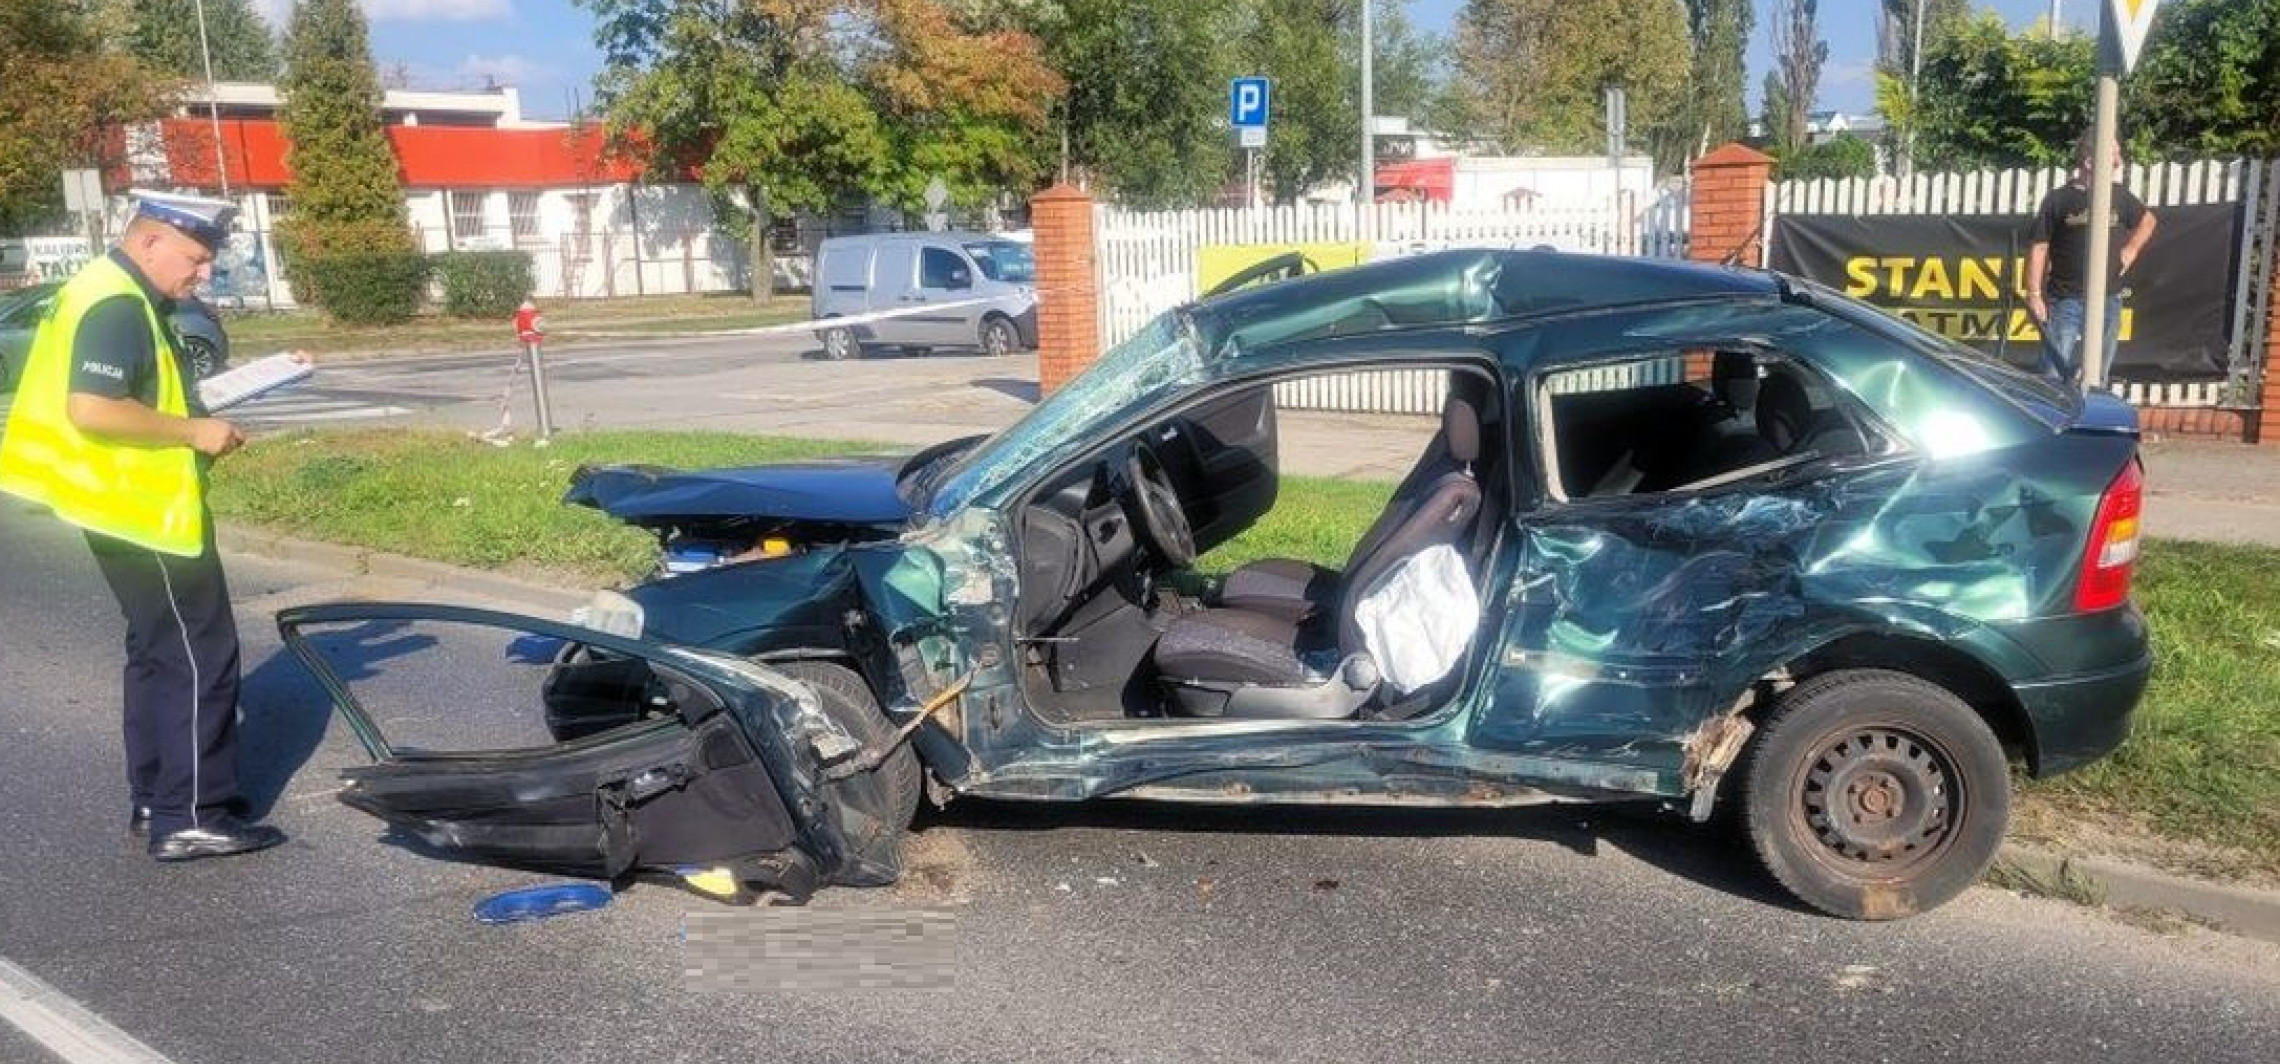 Inowrocław - Tragiczny finał wypadku na Poznańskiej